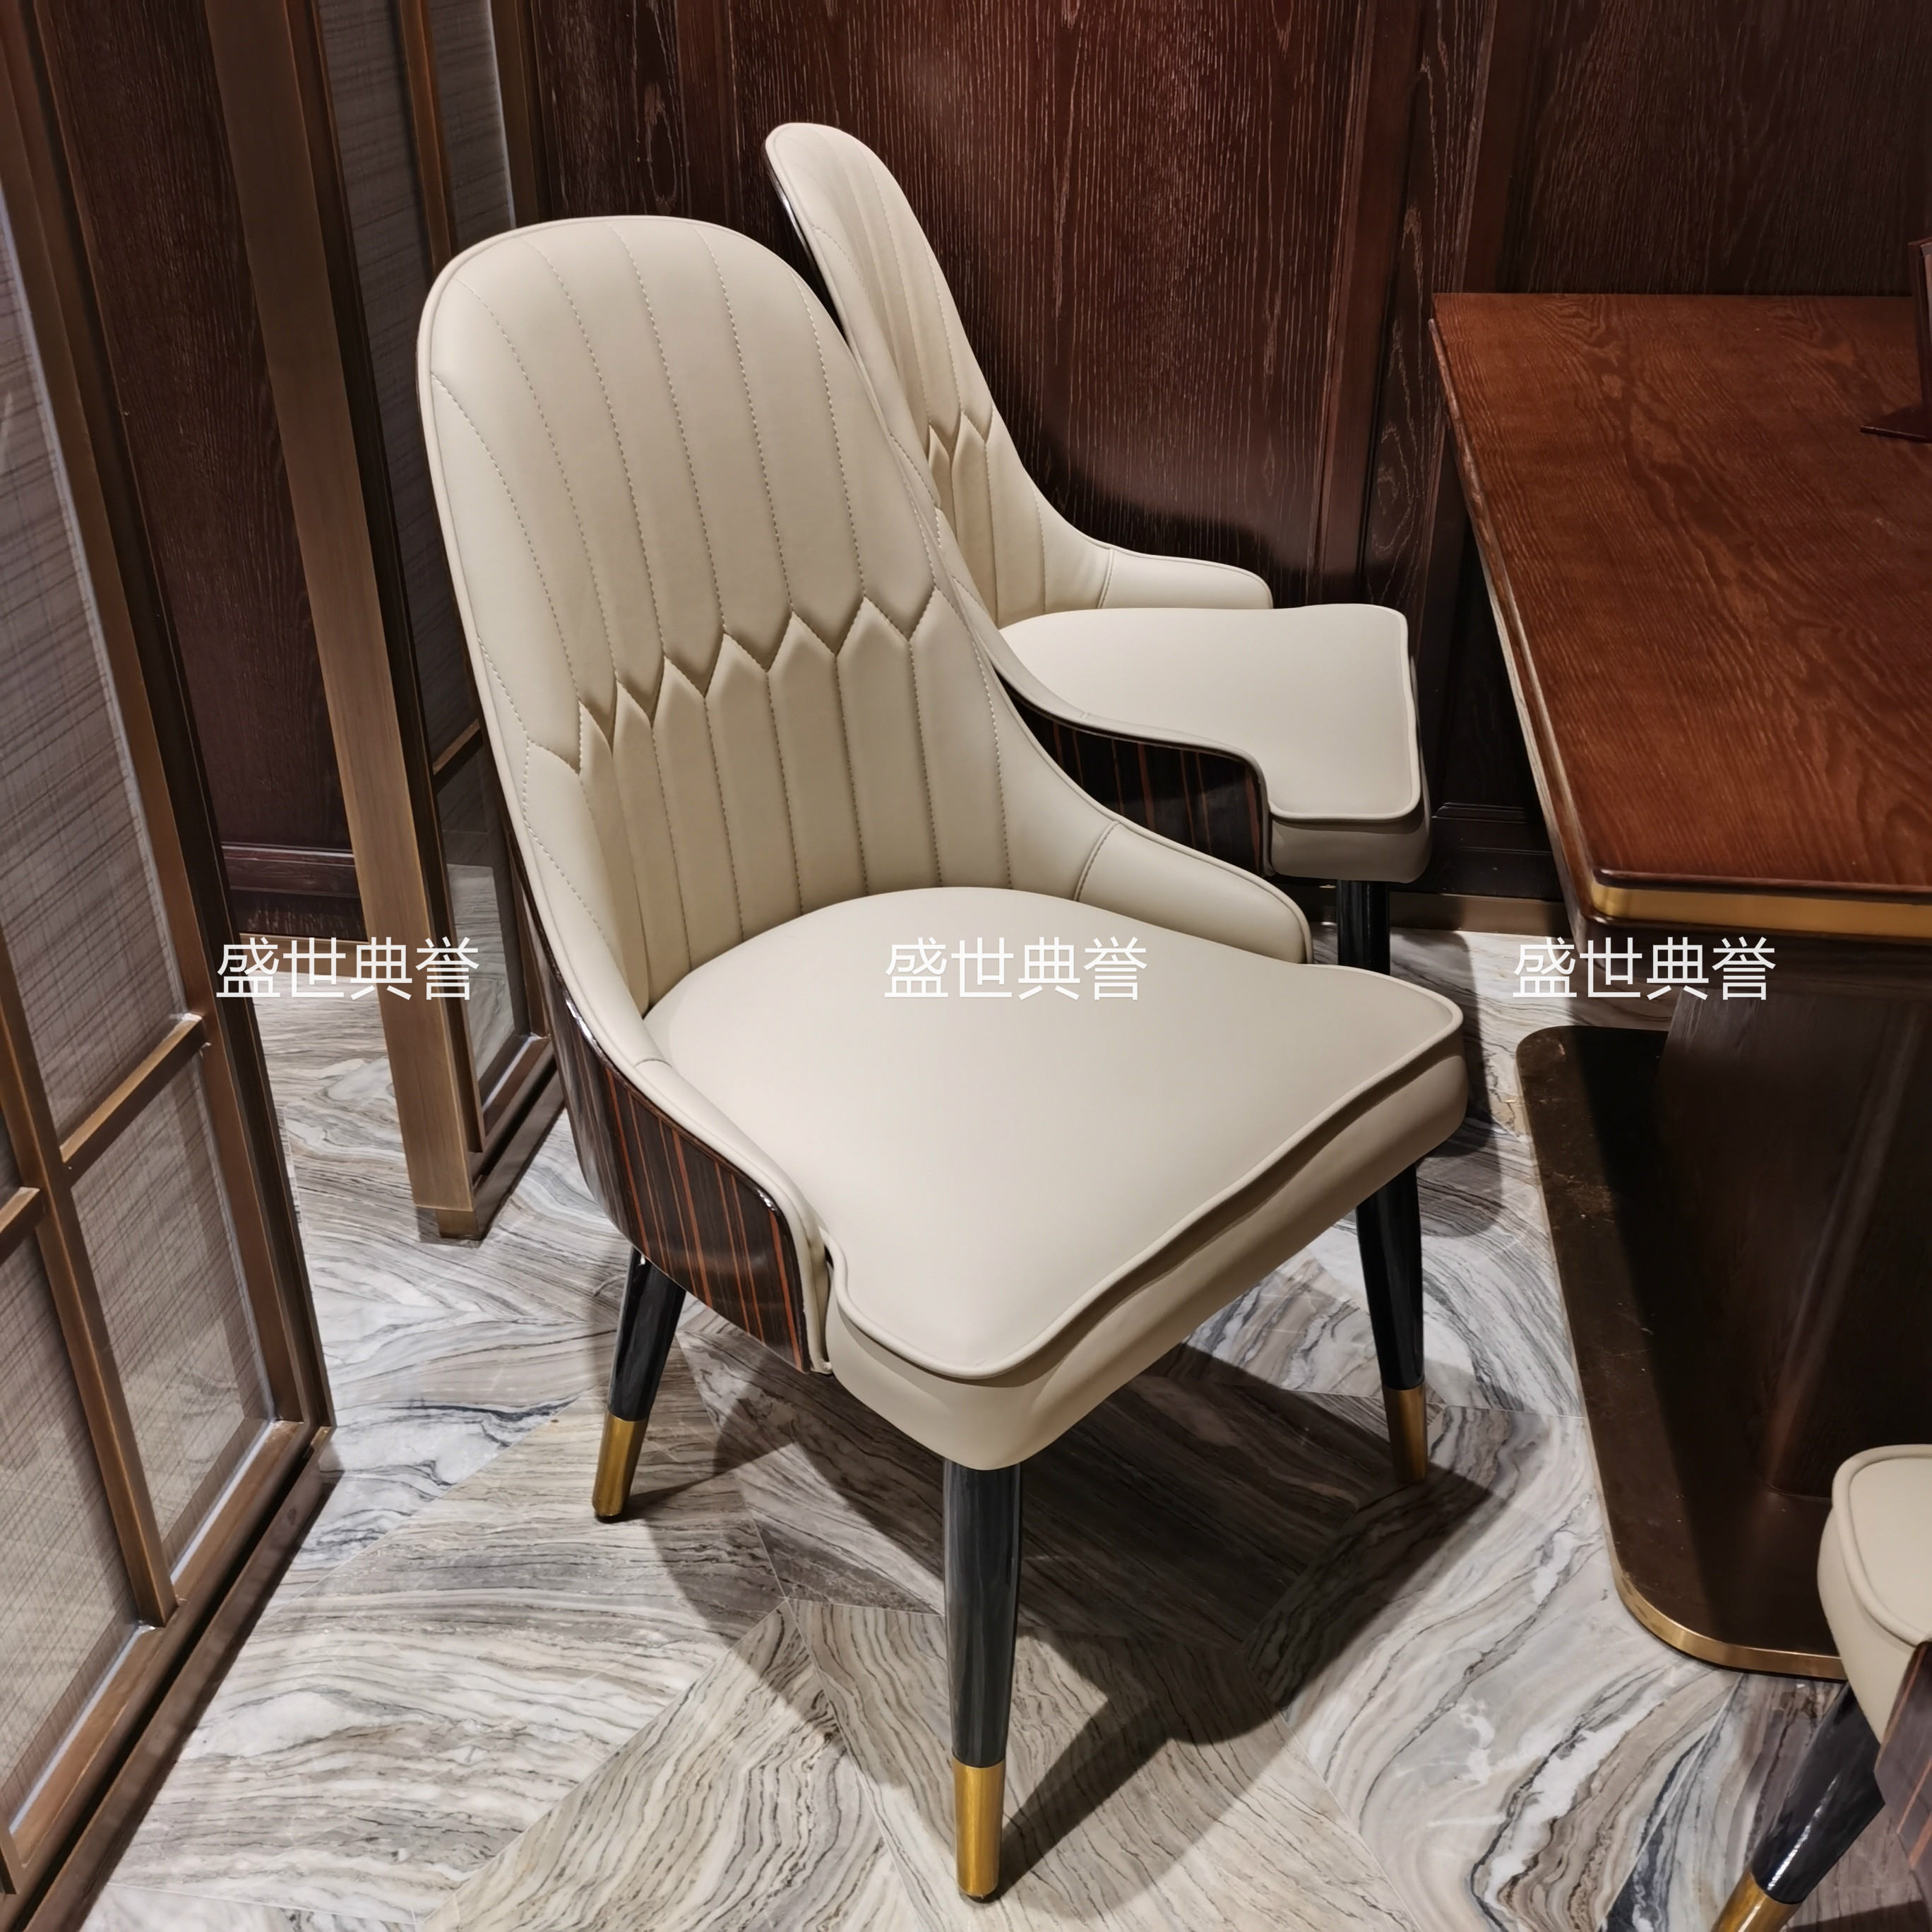 上海度假酒店西餐桌椅海鲜餐厅轻奢实木椅饭店自助餐厅实木餐桌椅详情图3